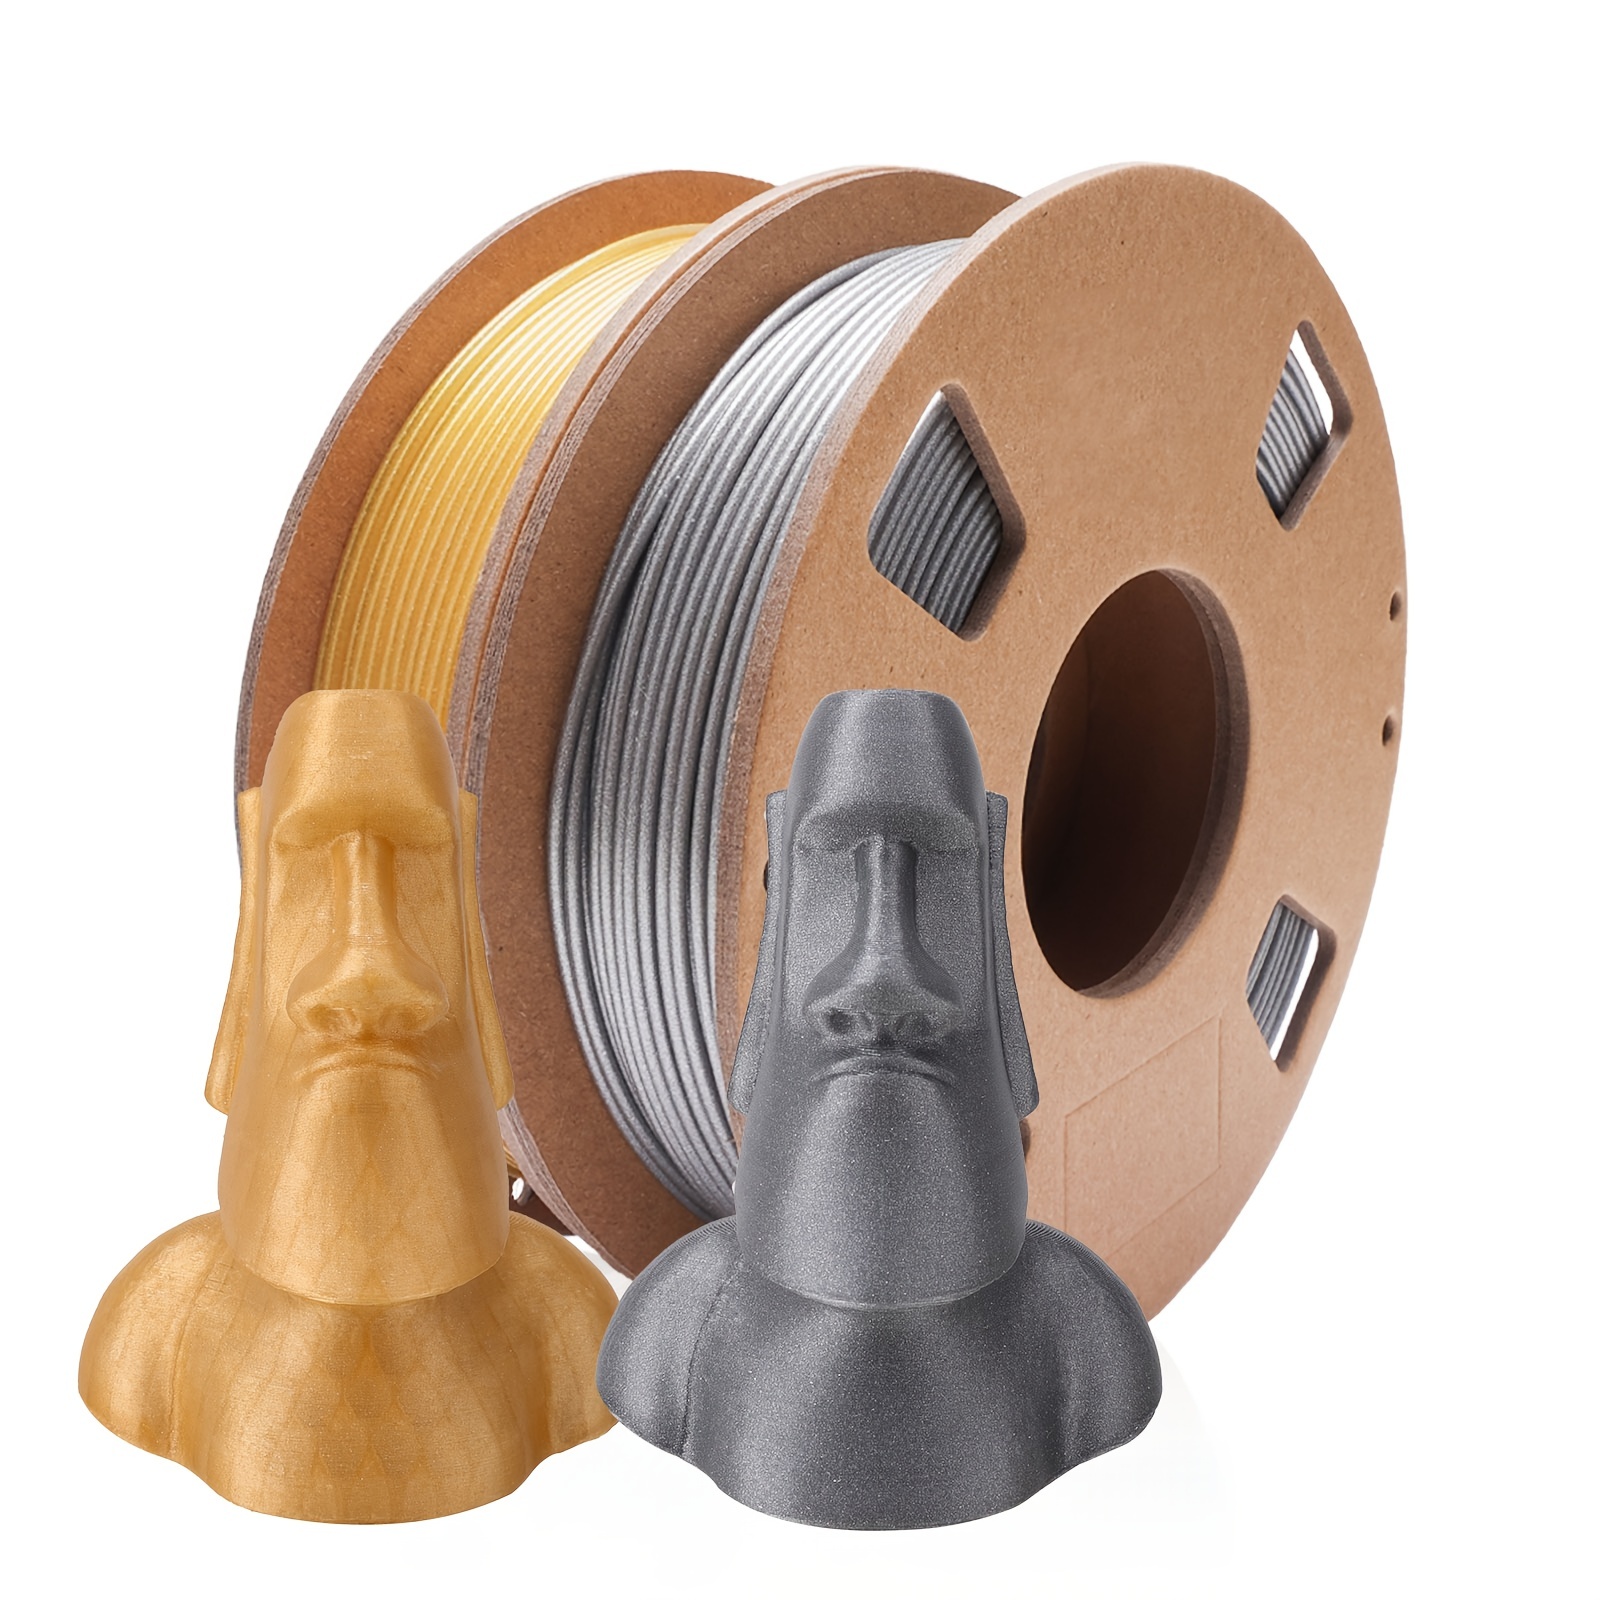 ELEGOO PLA 3D Printer Material 1.75mm 1KG/2.2LB Filament For FDM